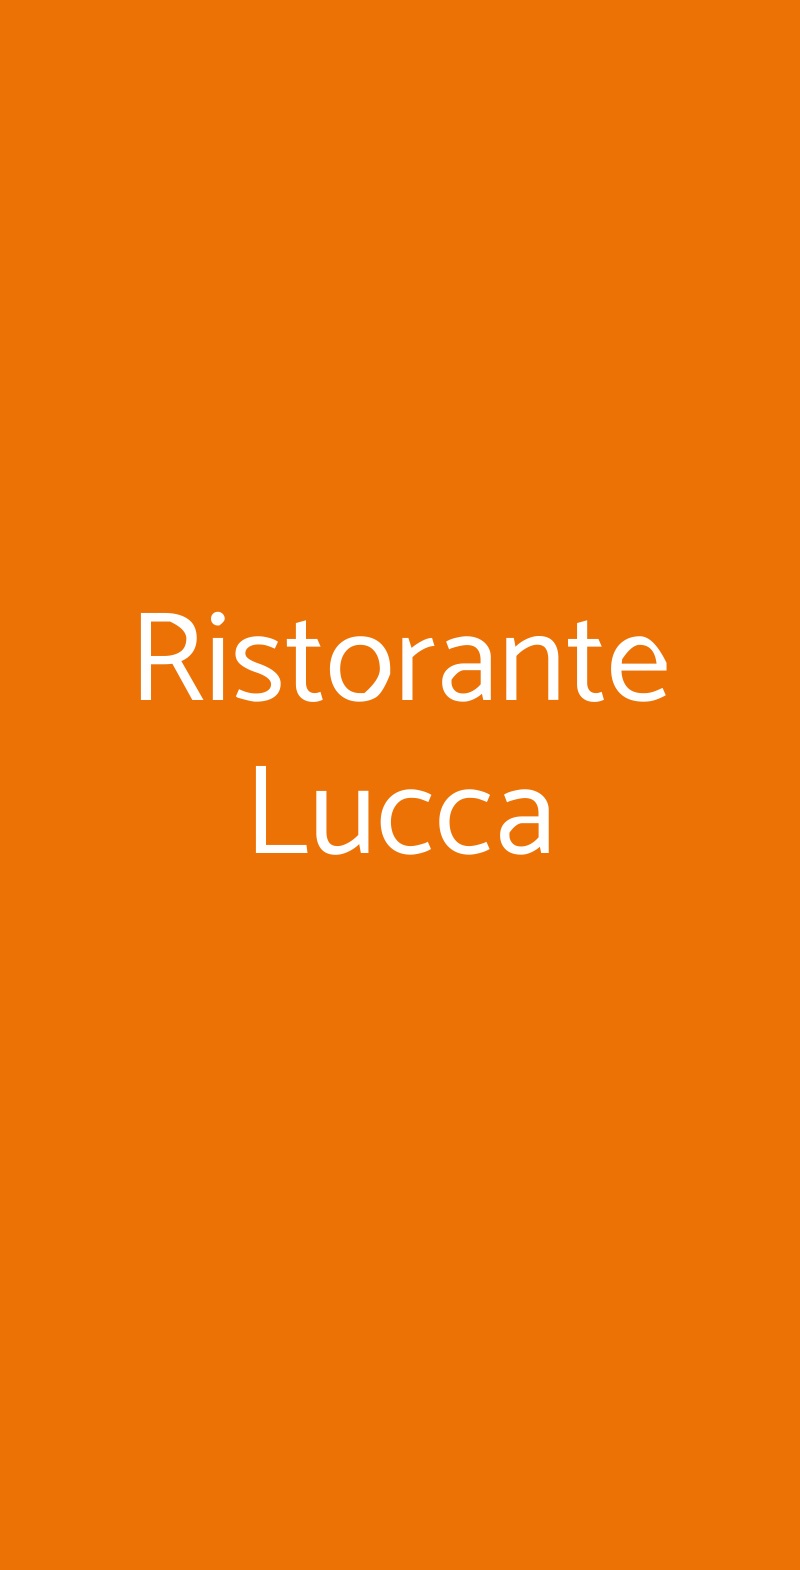 Ristorante Lucca Milano menù 1 pagina